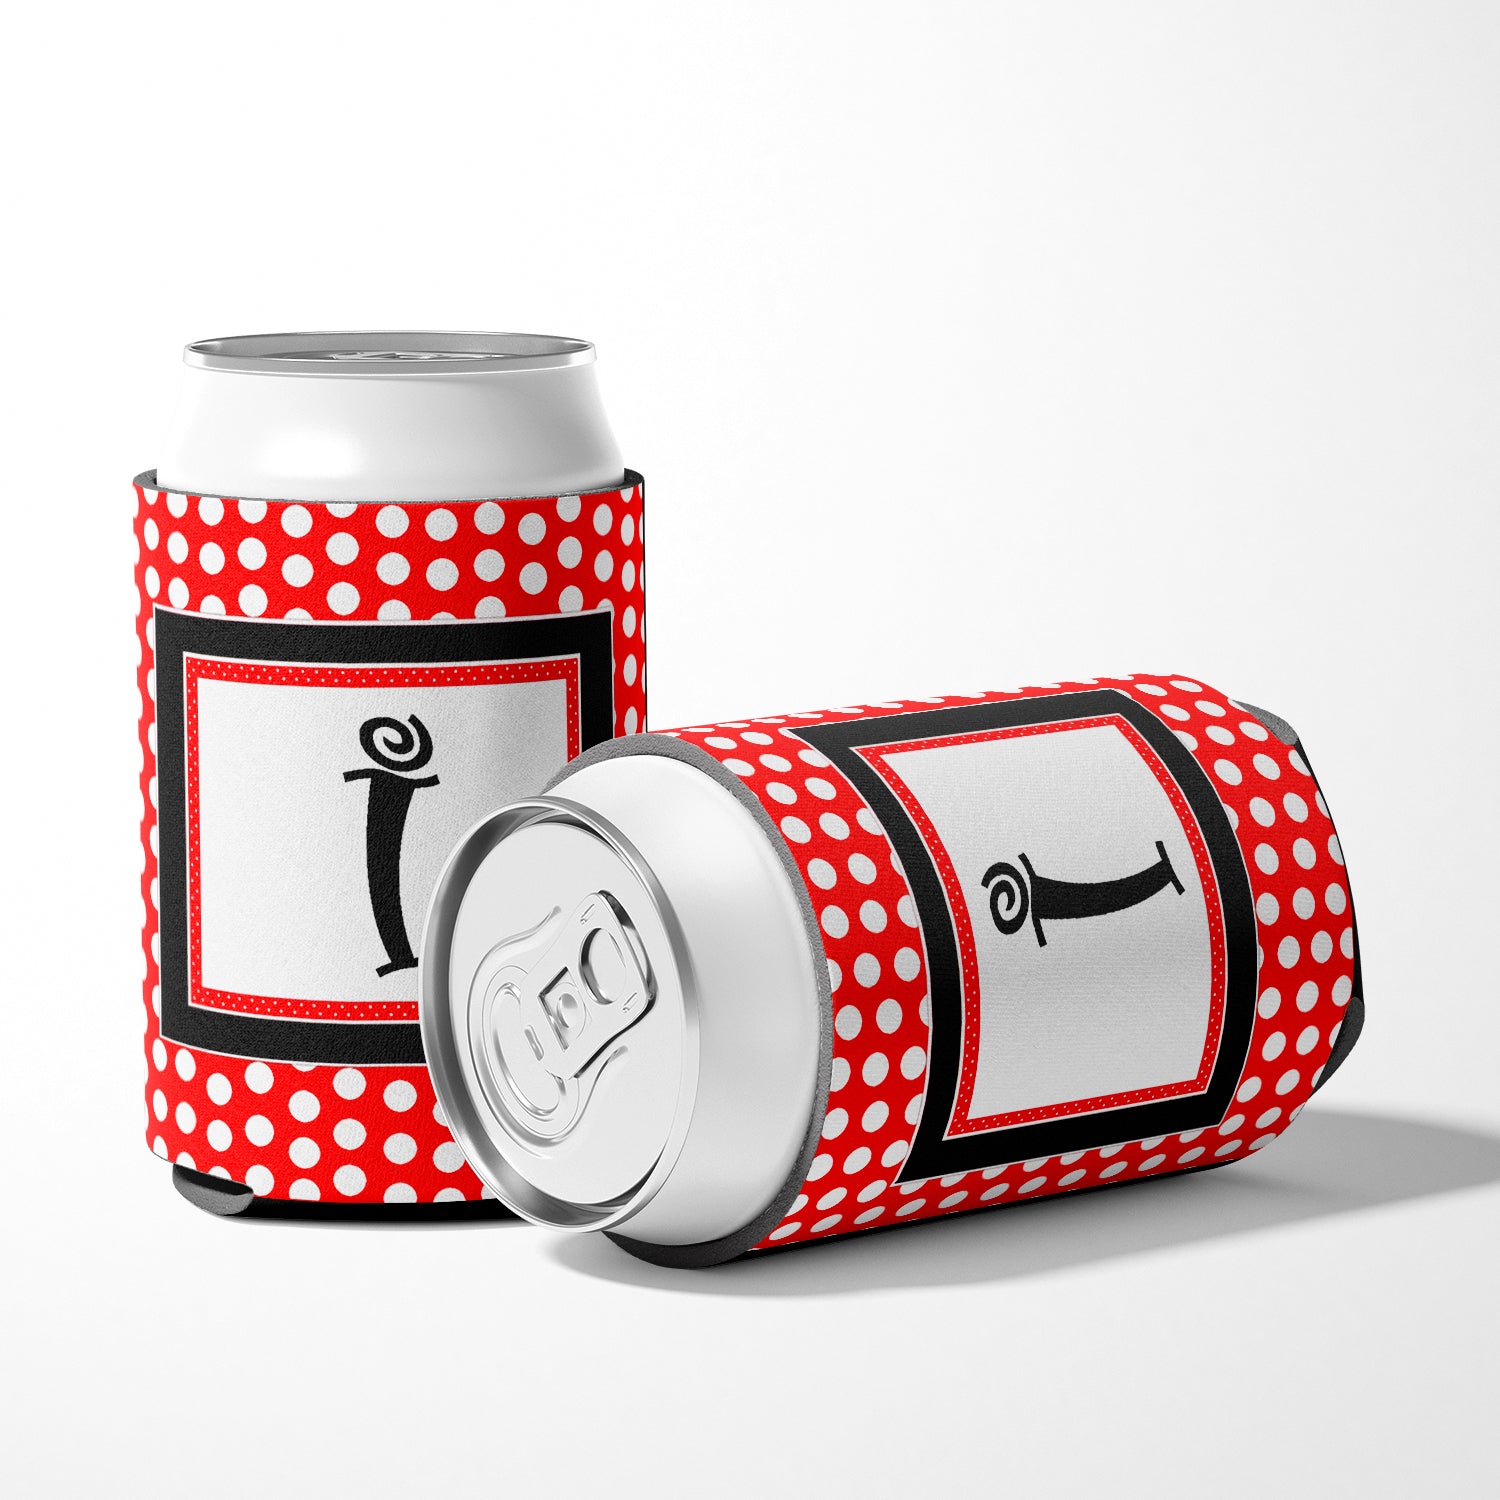 Letter I Initial Monogram - Red Black Polka Dots Can or Bottle Beverage Insulator Hugger.